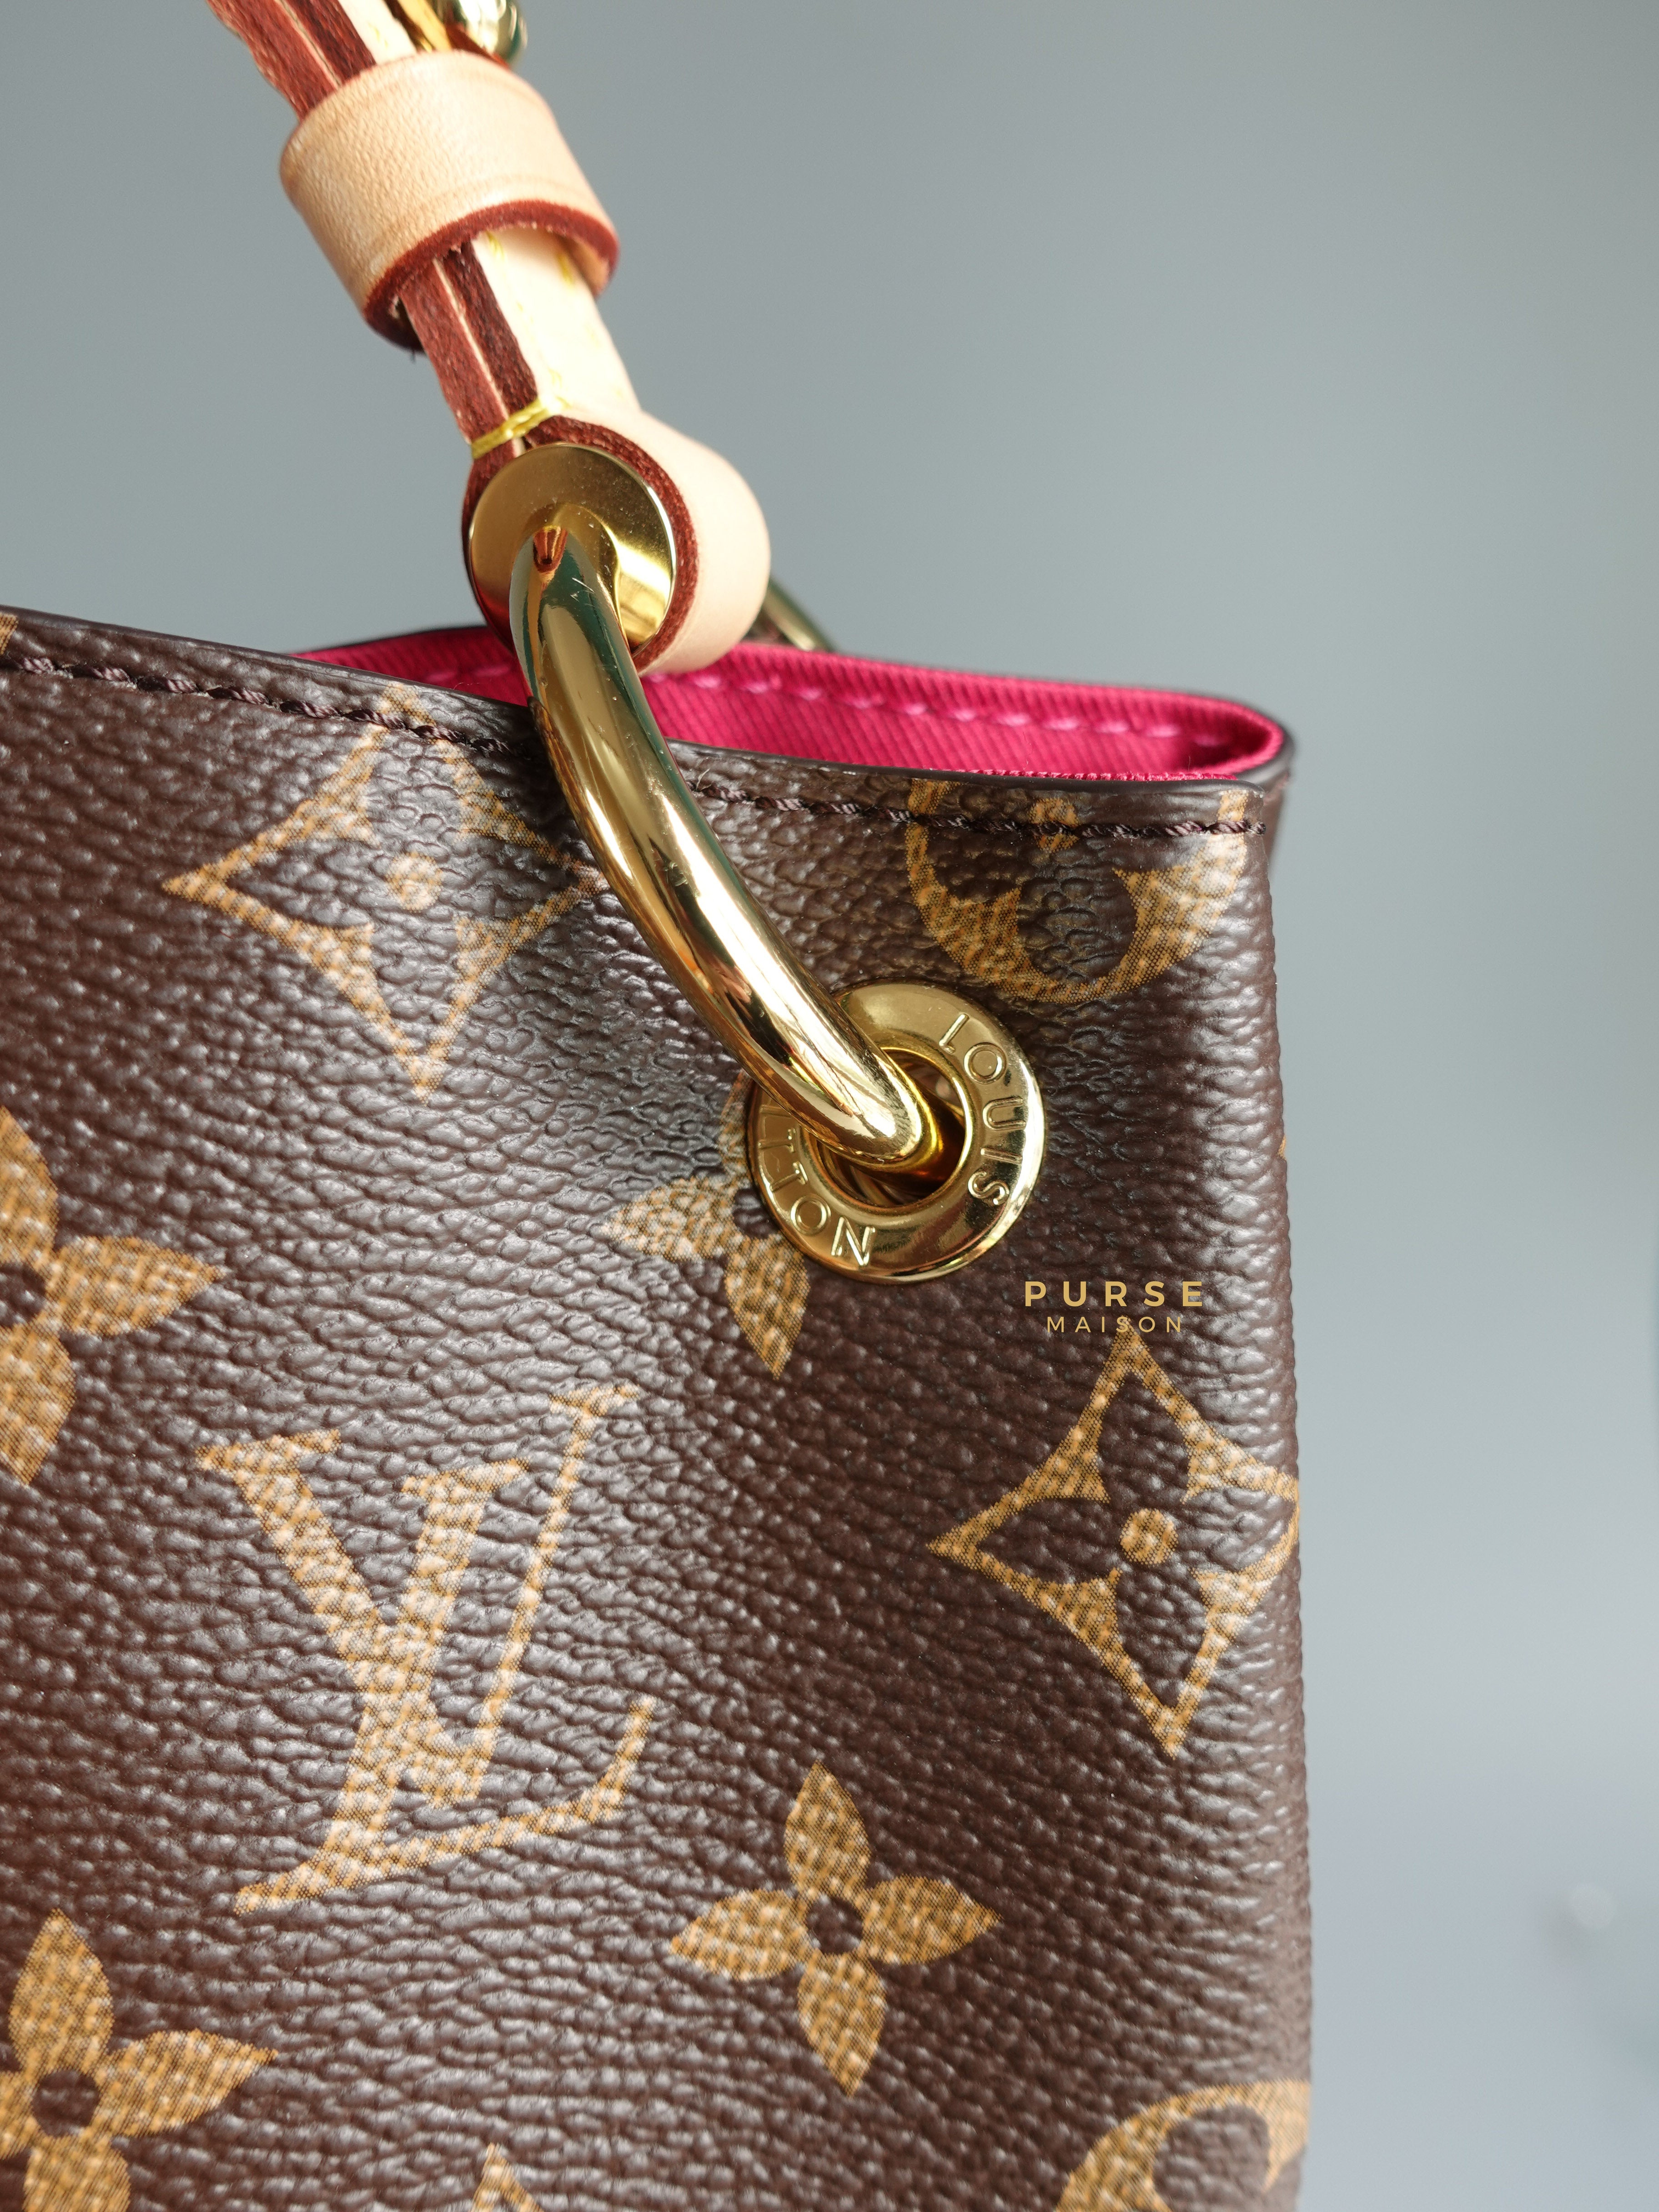 Louis Vuitton Graceful GM Monogram Canvas (Microchip) | Purse Maison Luxury Bags Shop